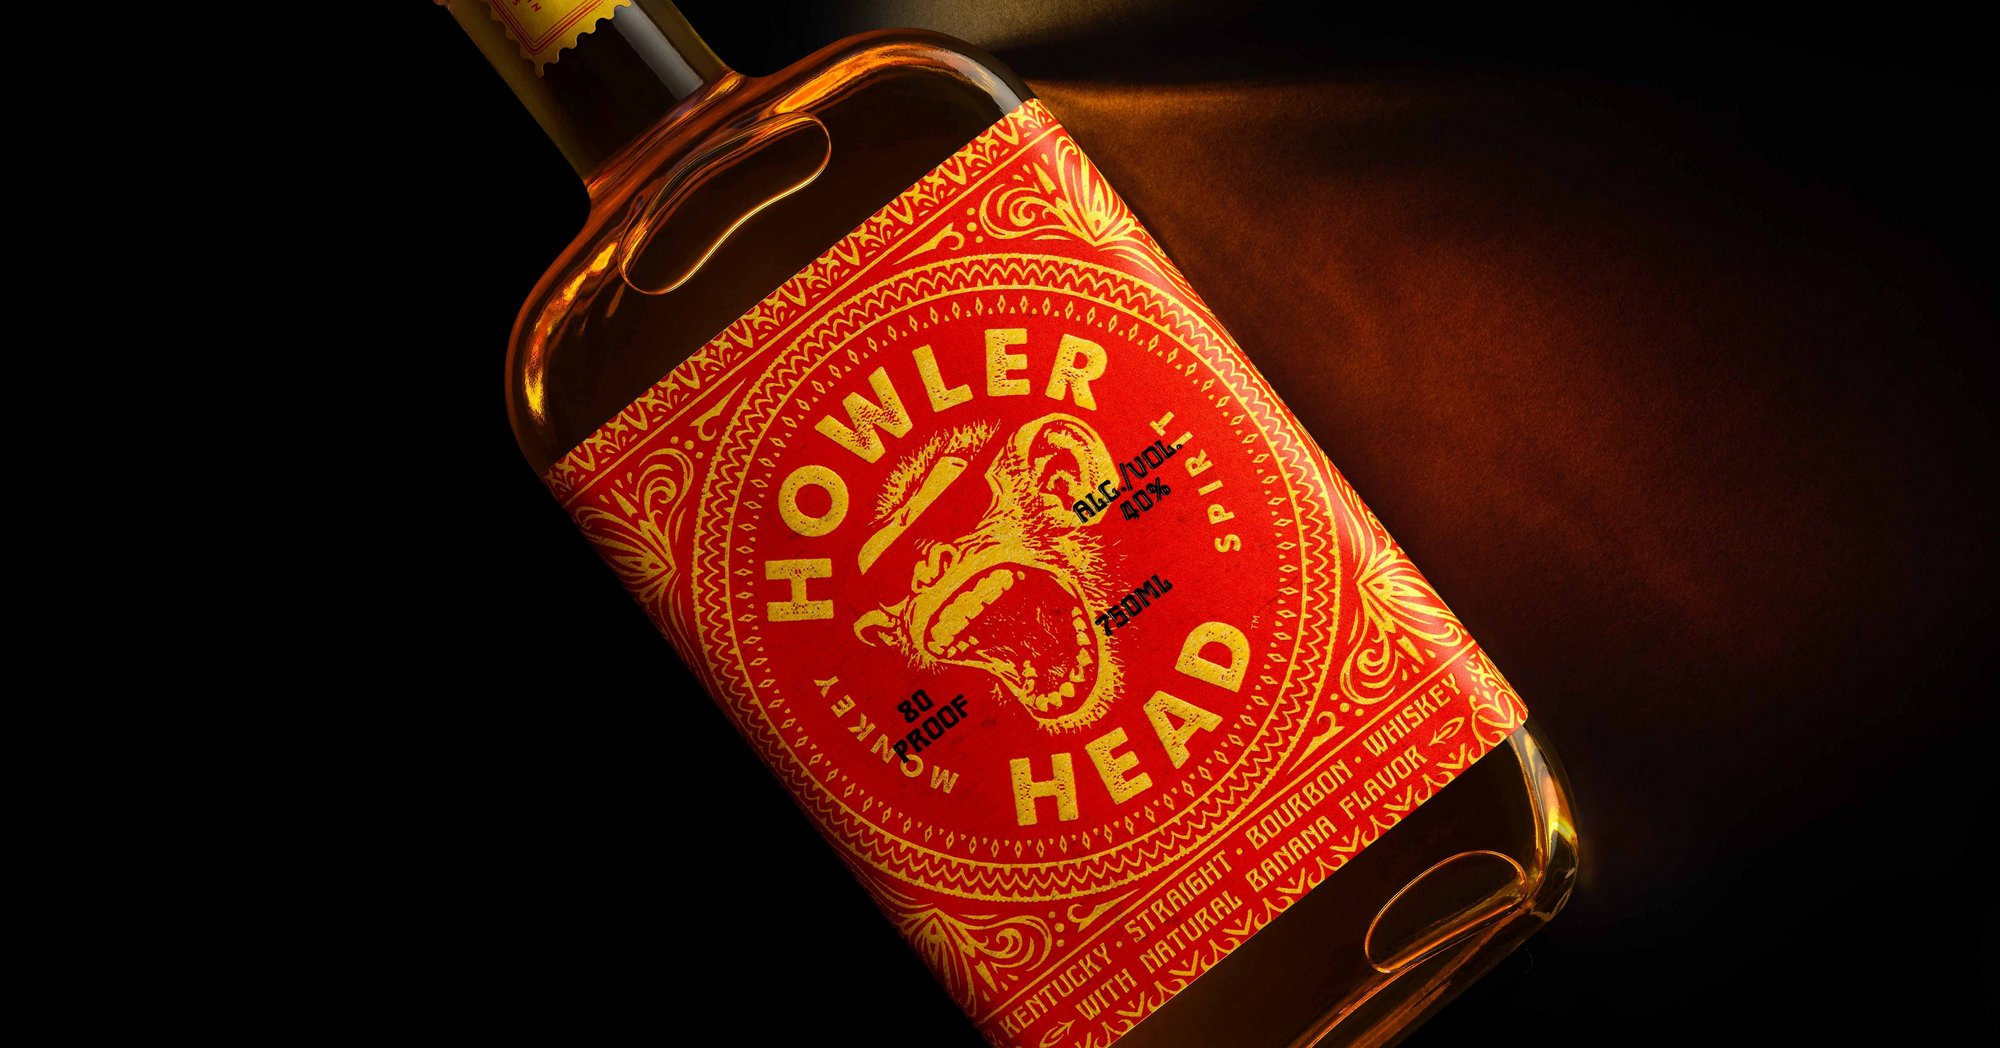 howler head whiskey uk